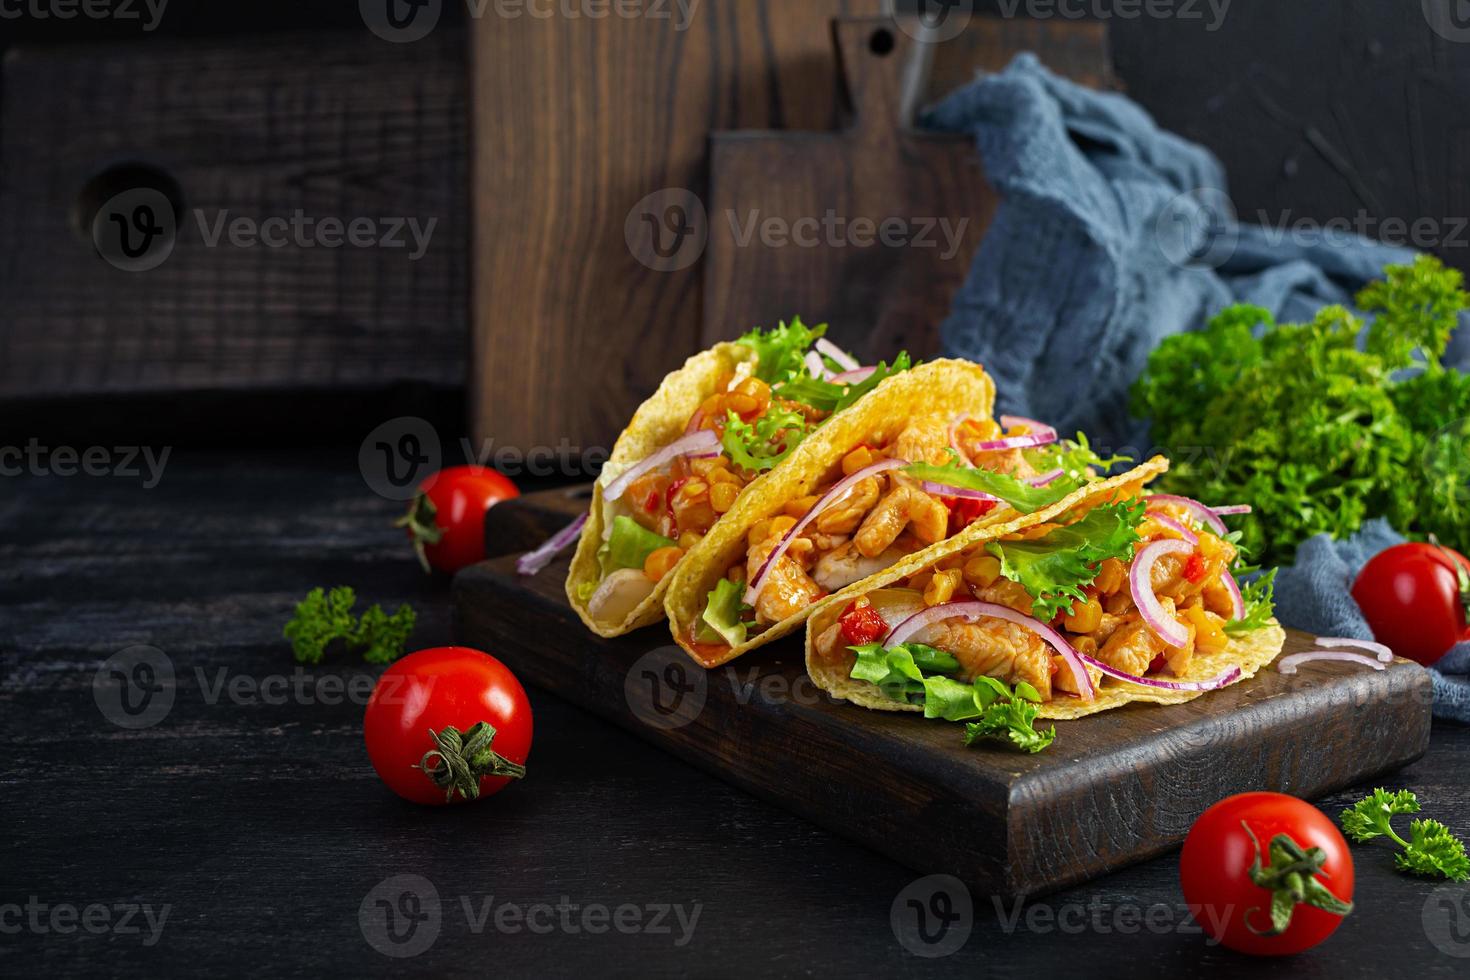 tacos mexicains avec tortilla de maïs. tortilla avec viande de poulet, maïs, laitue et oignon photo